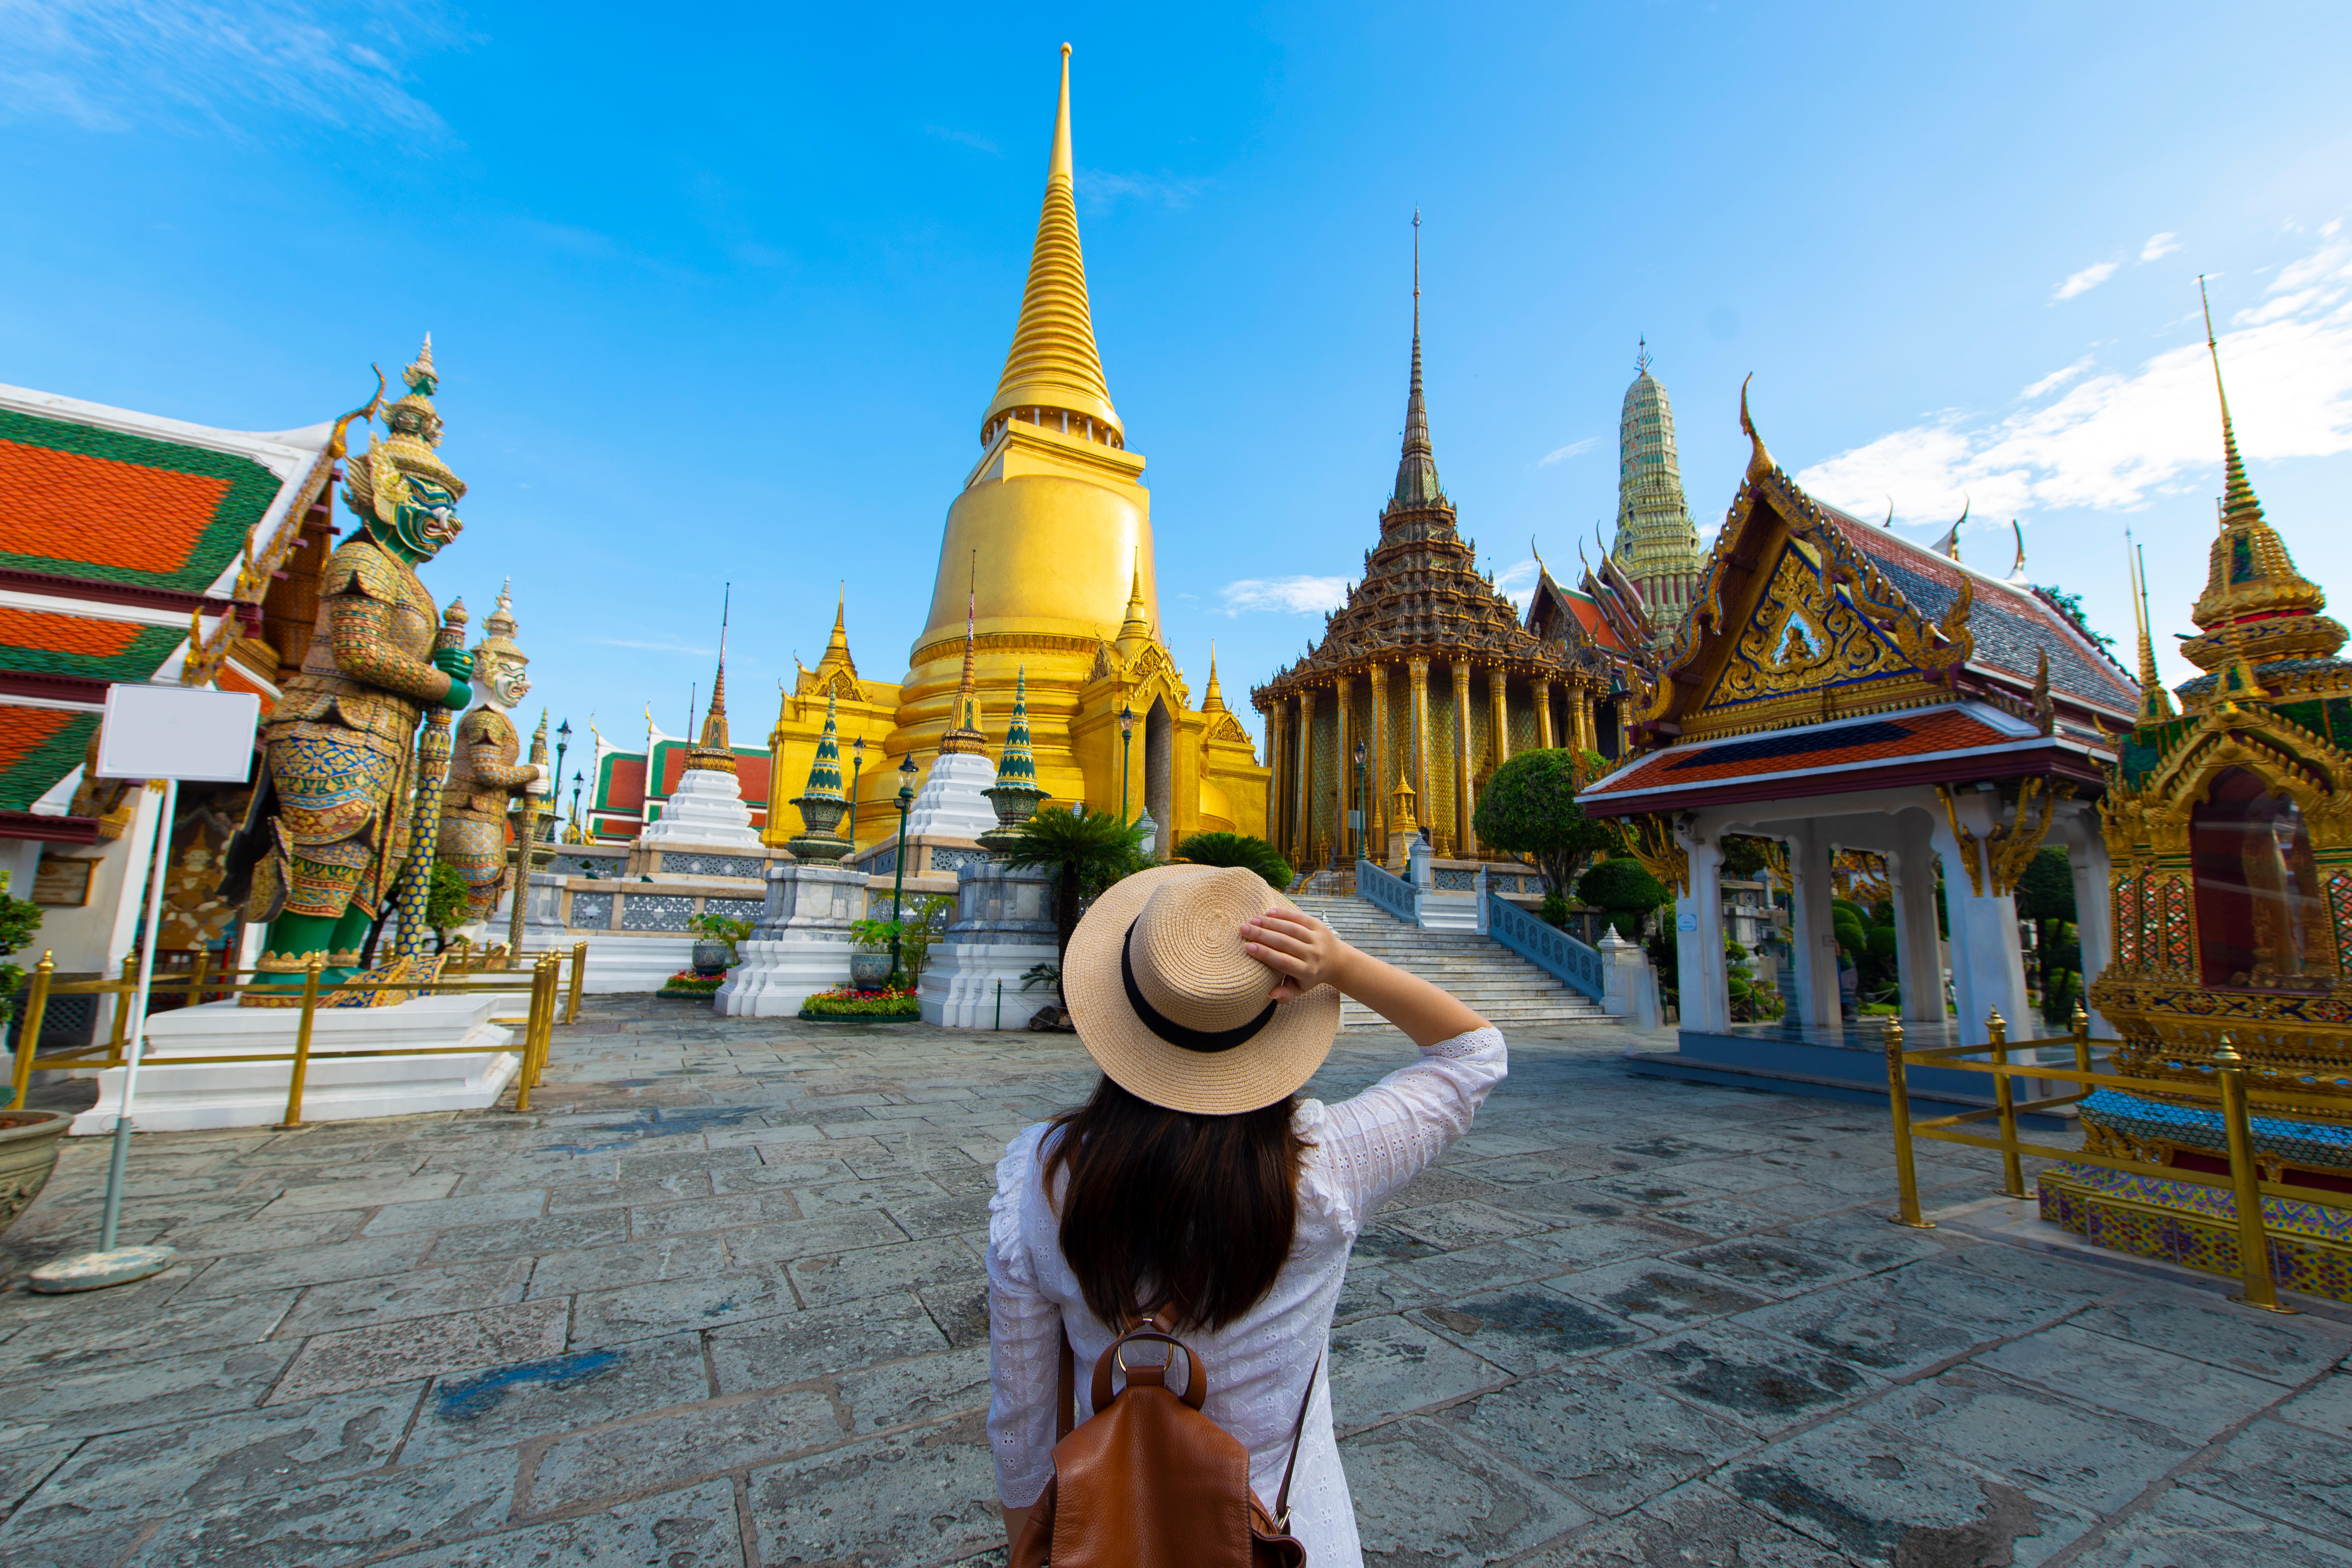 Beautiful Wat Phra Kaew temple